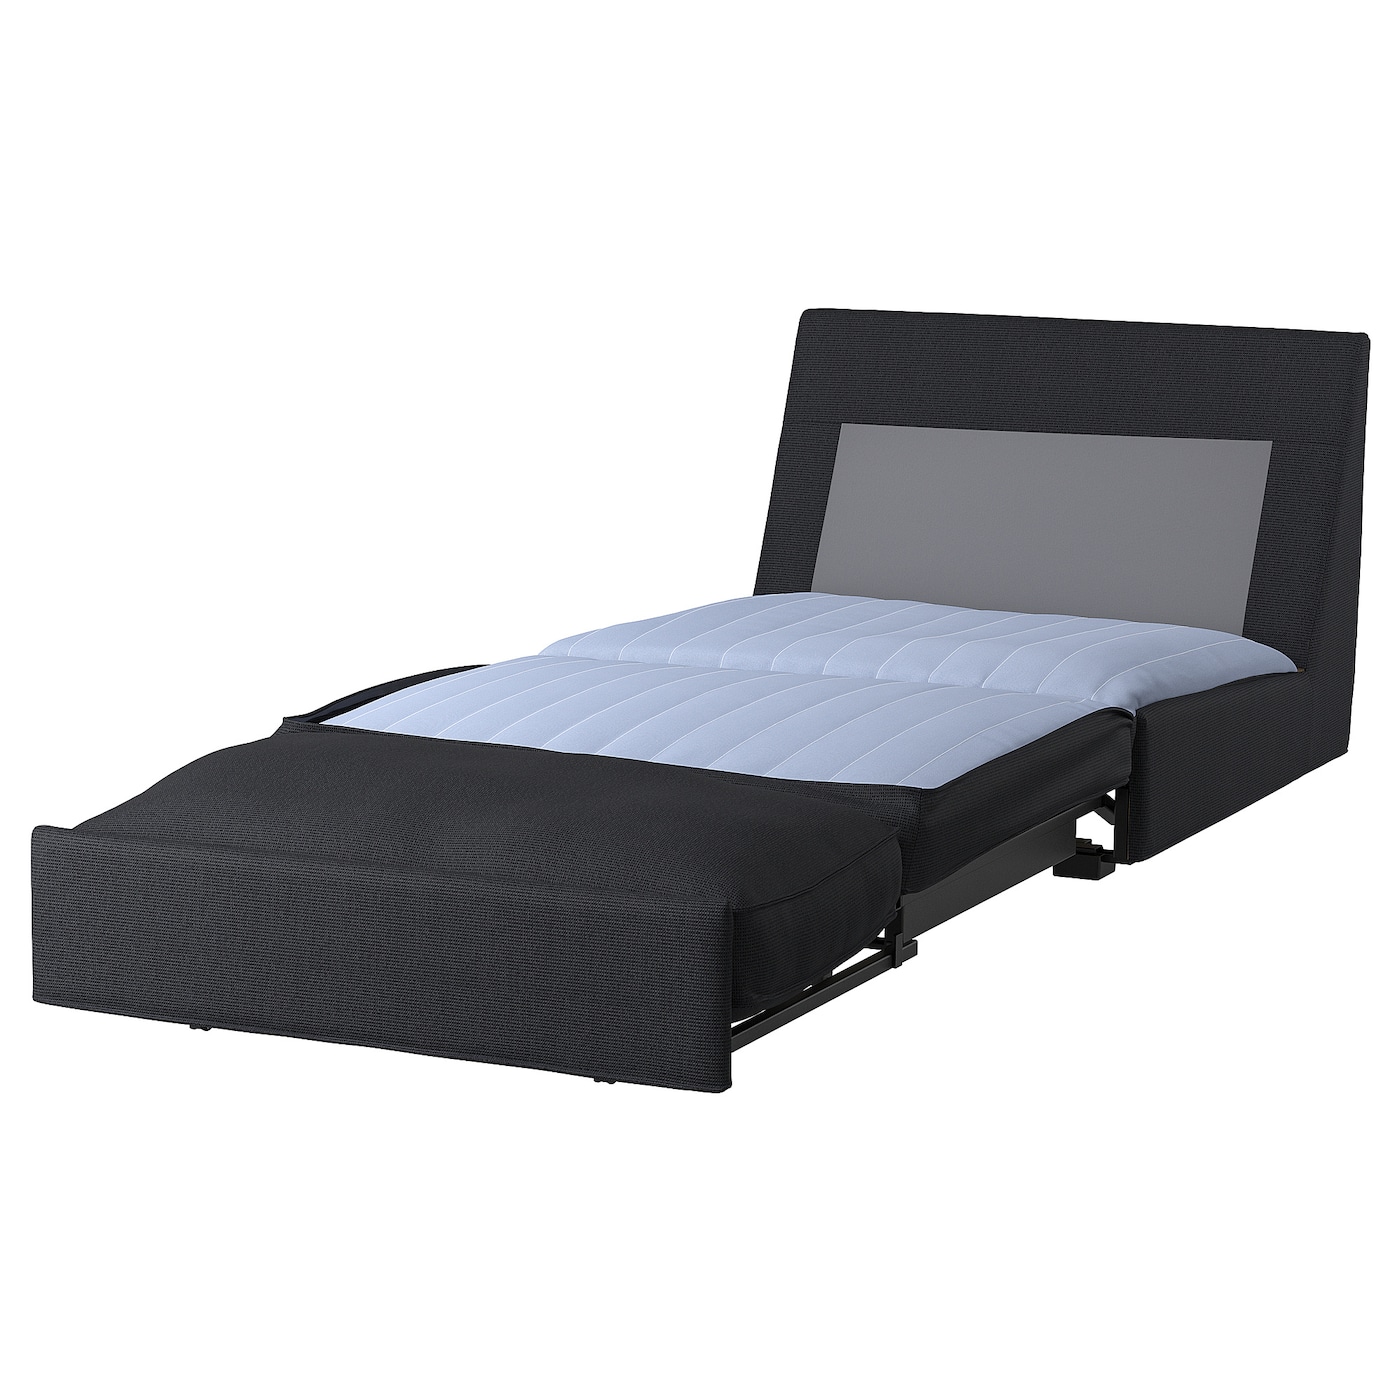 КИВИК 1 диван-кровать с откидной спинкой, Тресунд антрацит KIVIK IKEA уличный портативный надувной диван пляжная кровать ленивая популярная кровать с подушкой кровать для кемпинга воздушная кровать шезлон